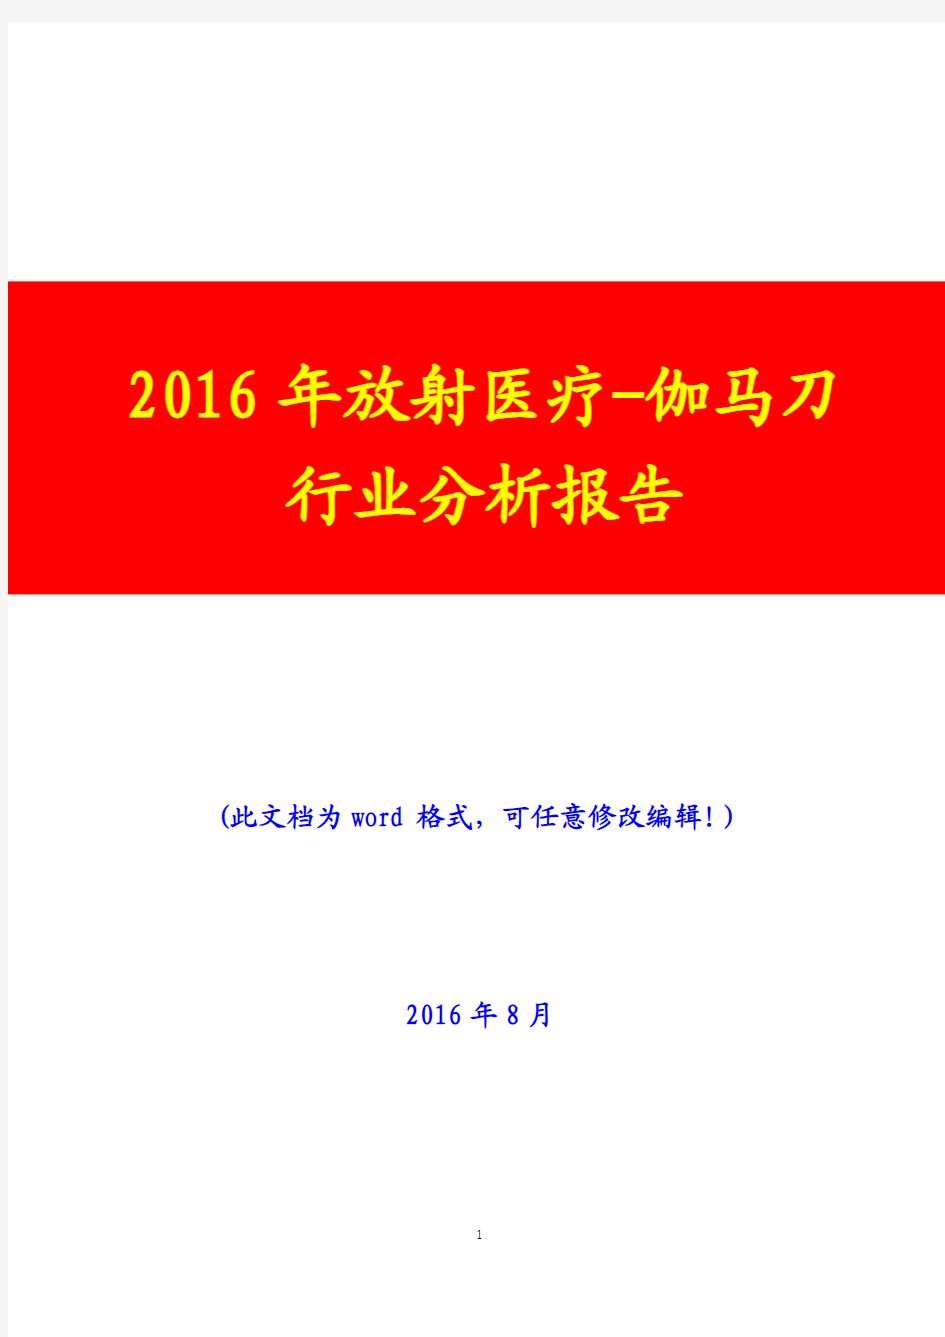 2016年放射医疗-伽马刀行业分析报告(经典版)